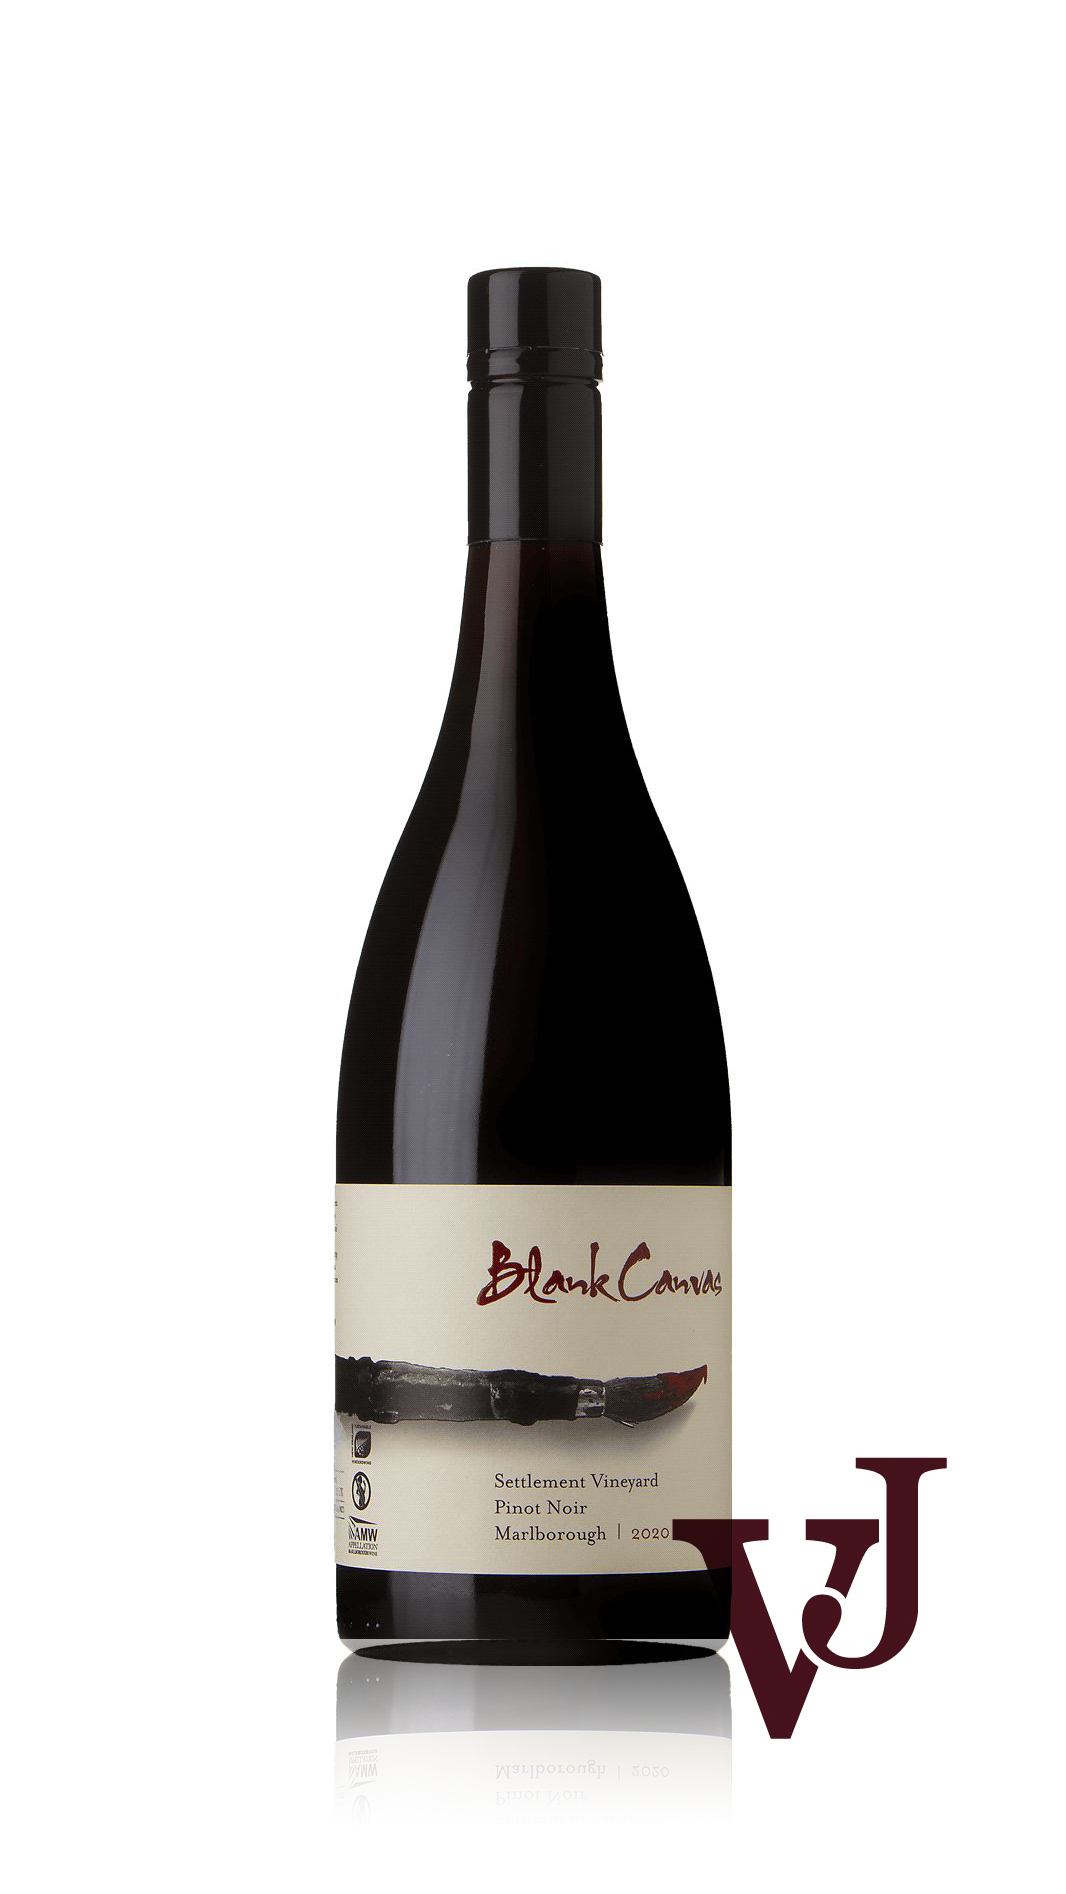 Rött Vin - Blank Canvas Pinot Noir Settlement Vineyard 2020 artikel nummer 9466101 från producenten Blank Canvas Wines Limited från området Nya Zeeland